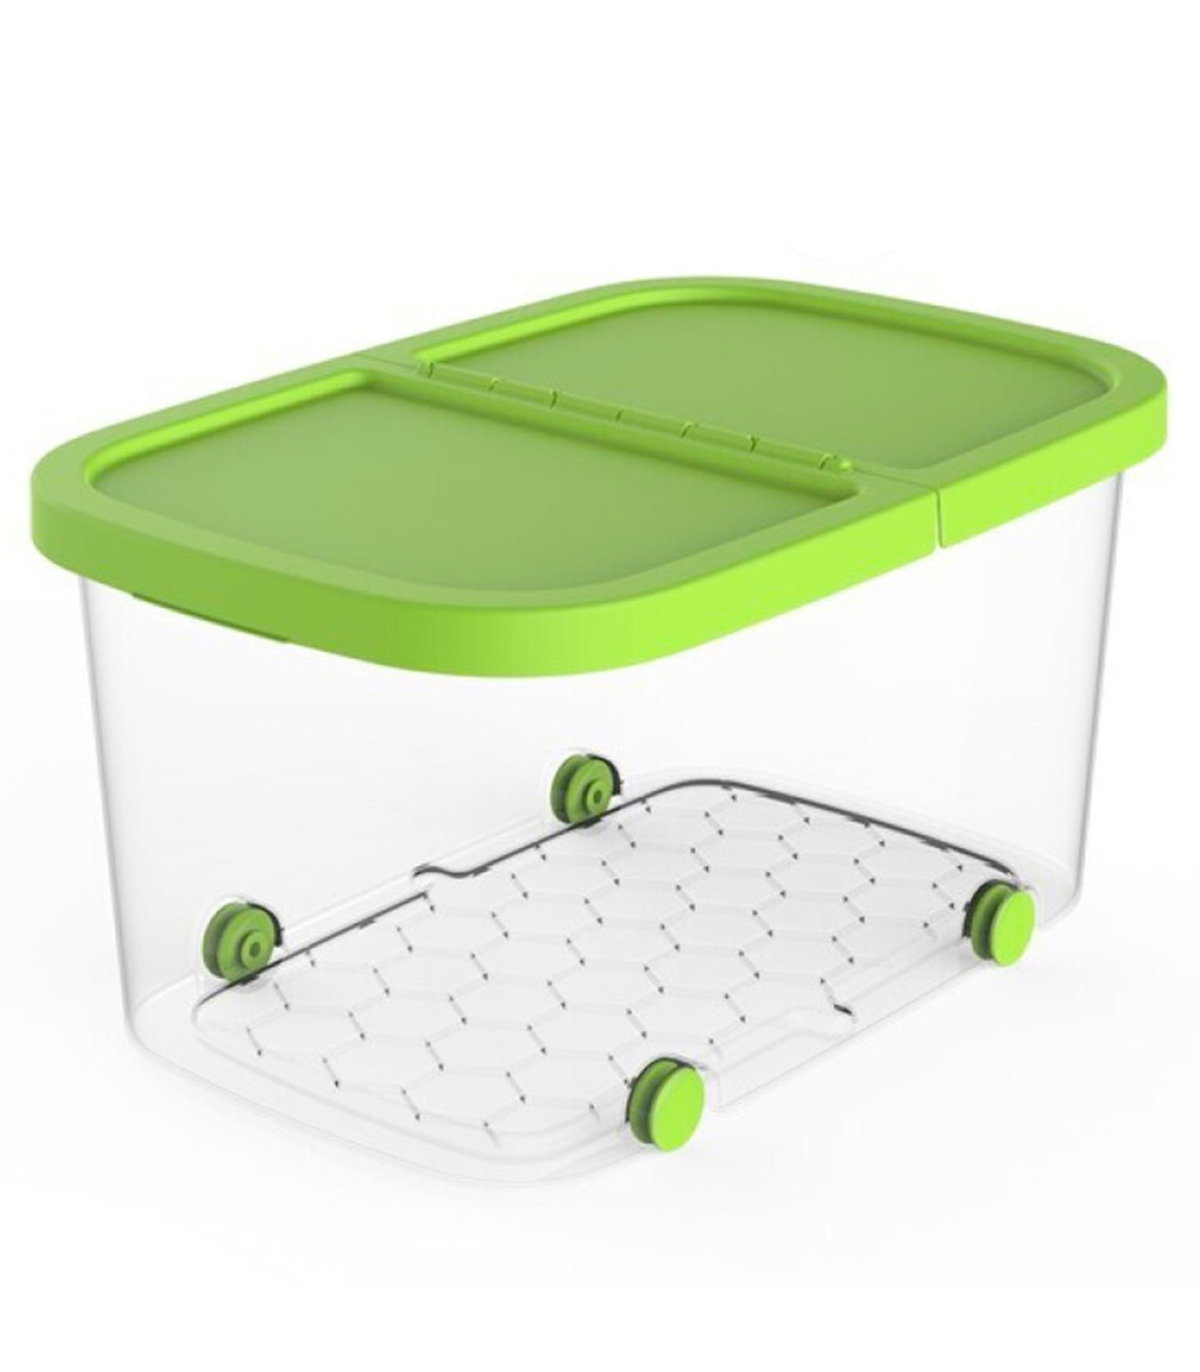 Tradineur - Caja botiquín de plástico con asa y bandeja extraíble, cierres  click, almacenamiento primeros auxilios, fabricado en